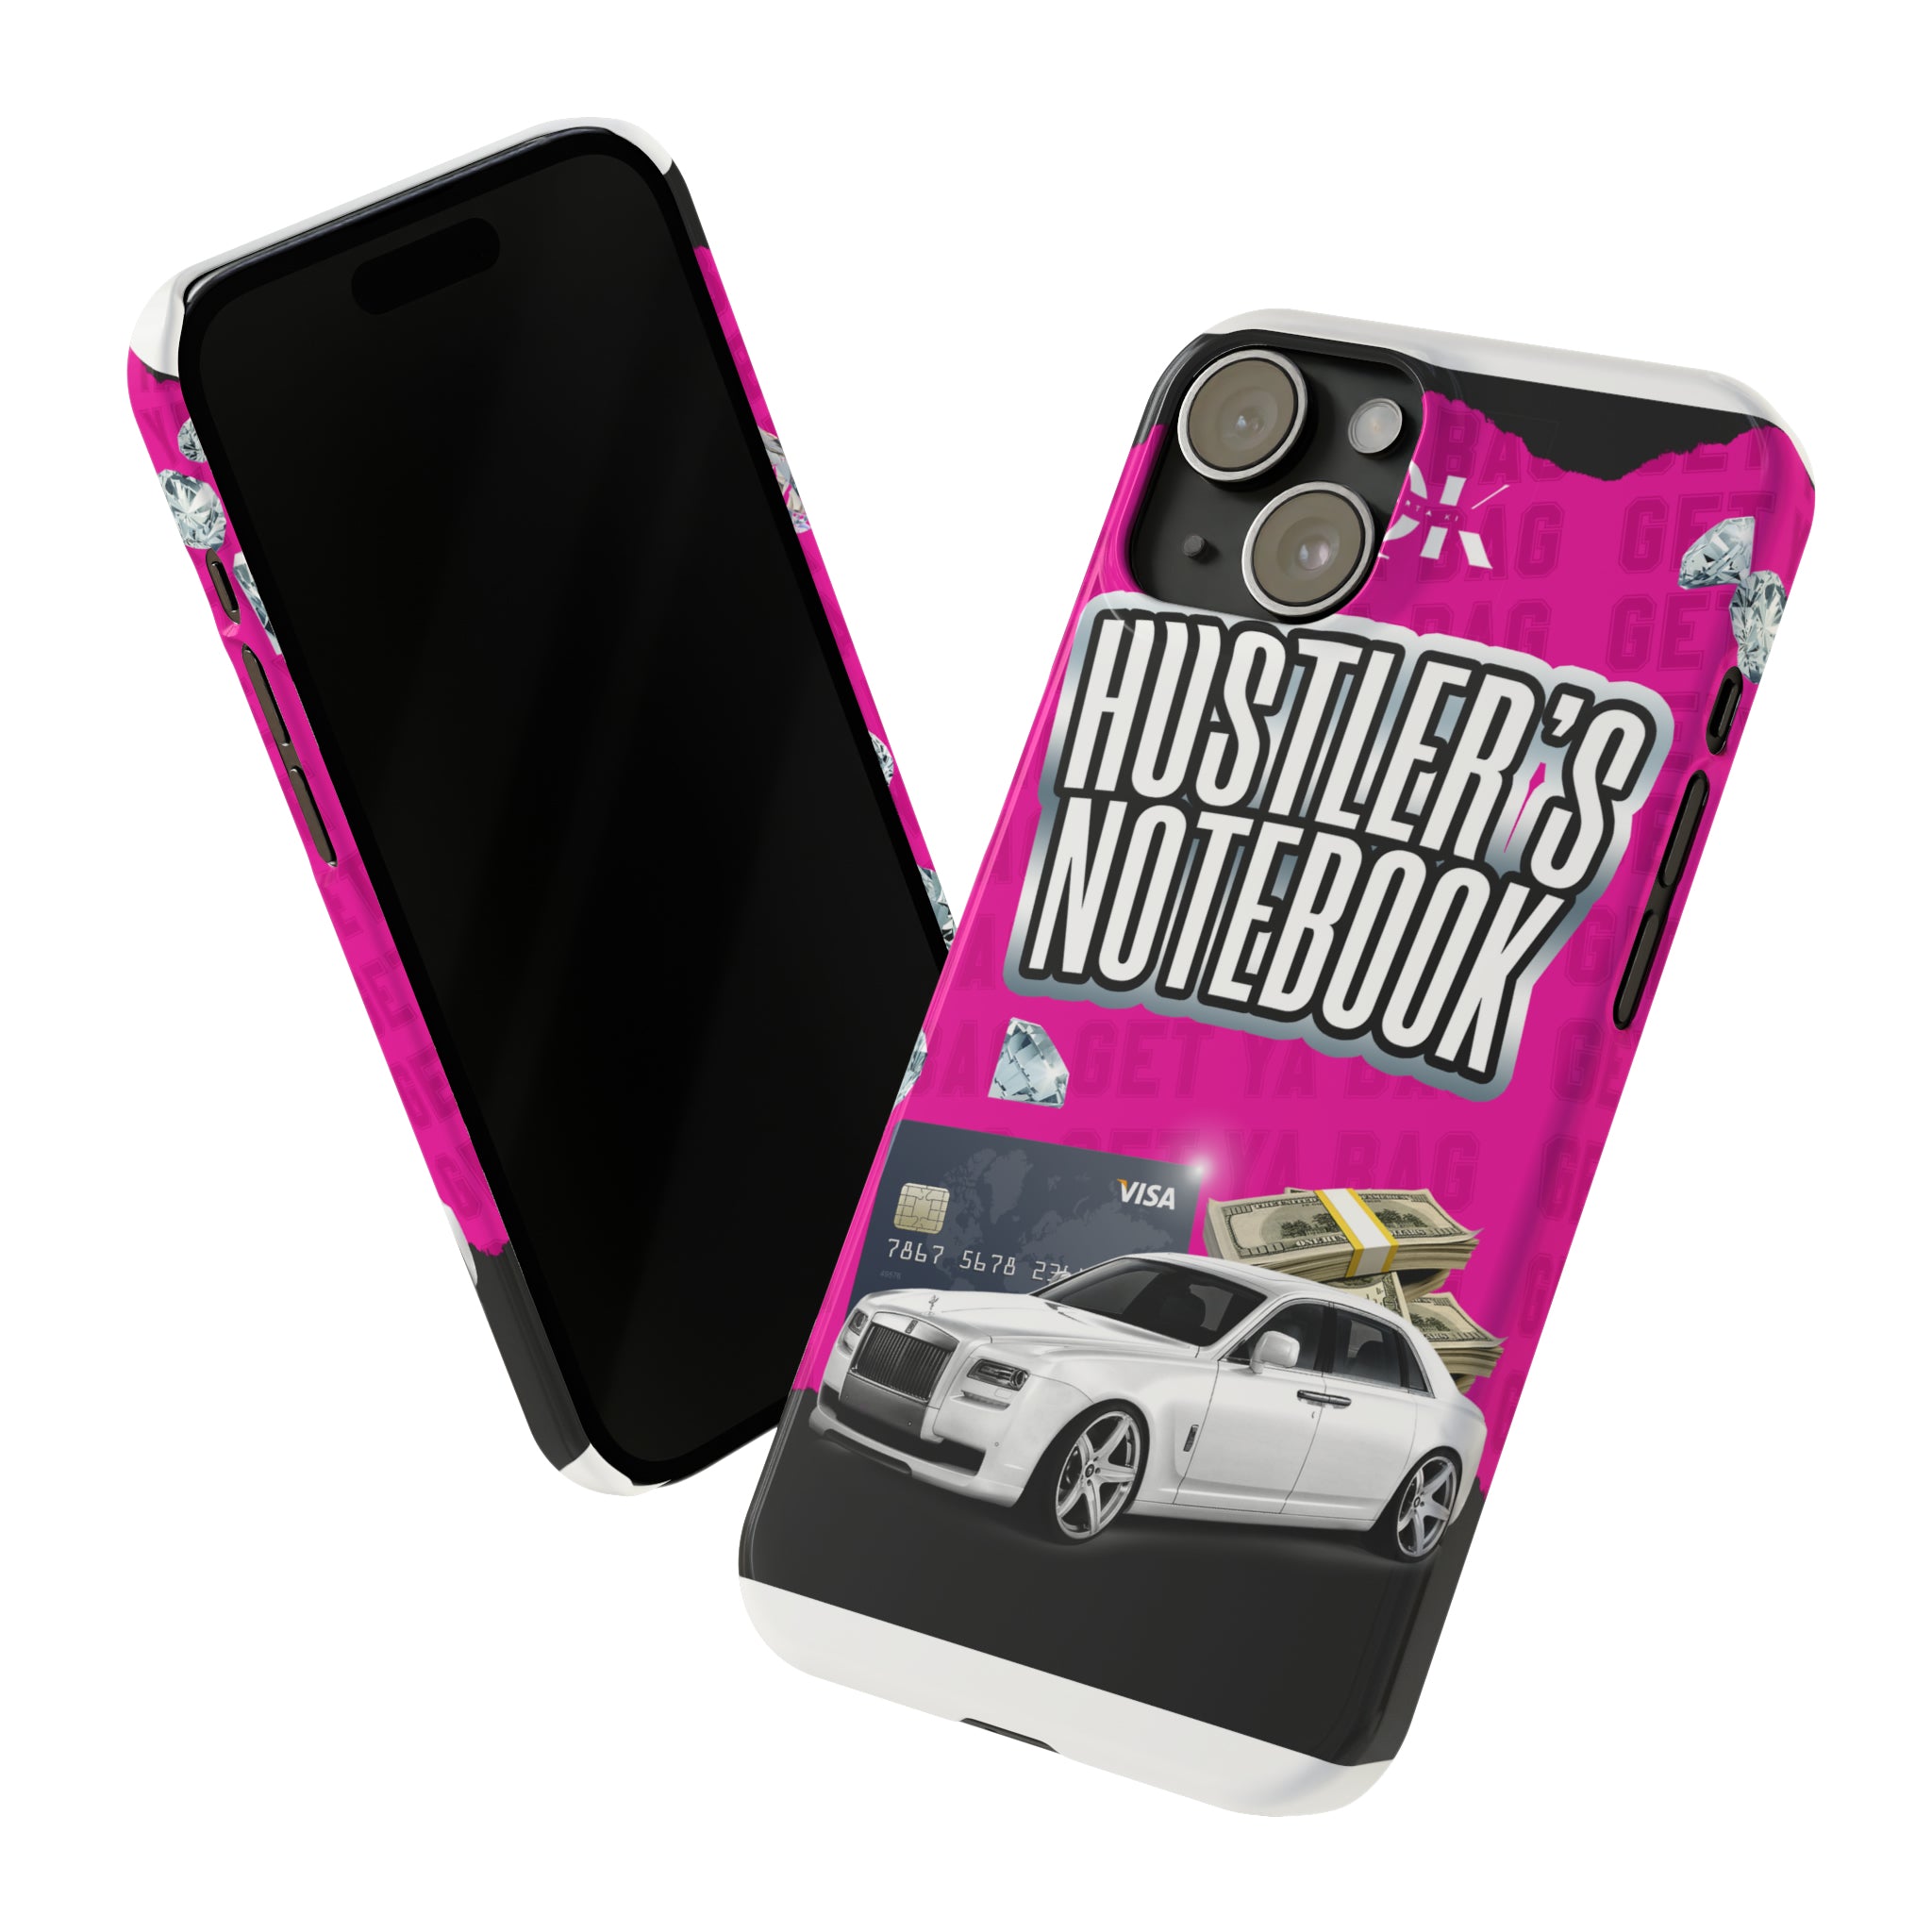 Hustler's Iphone Case